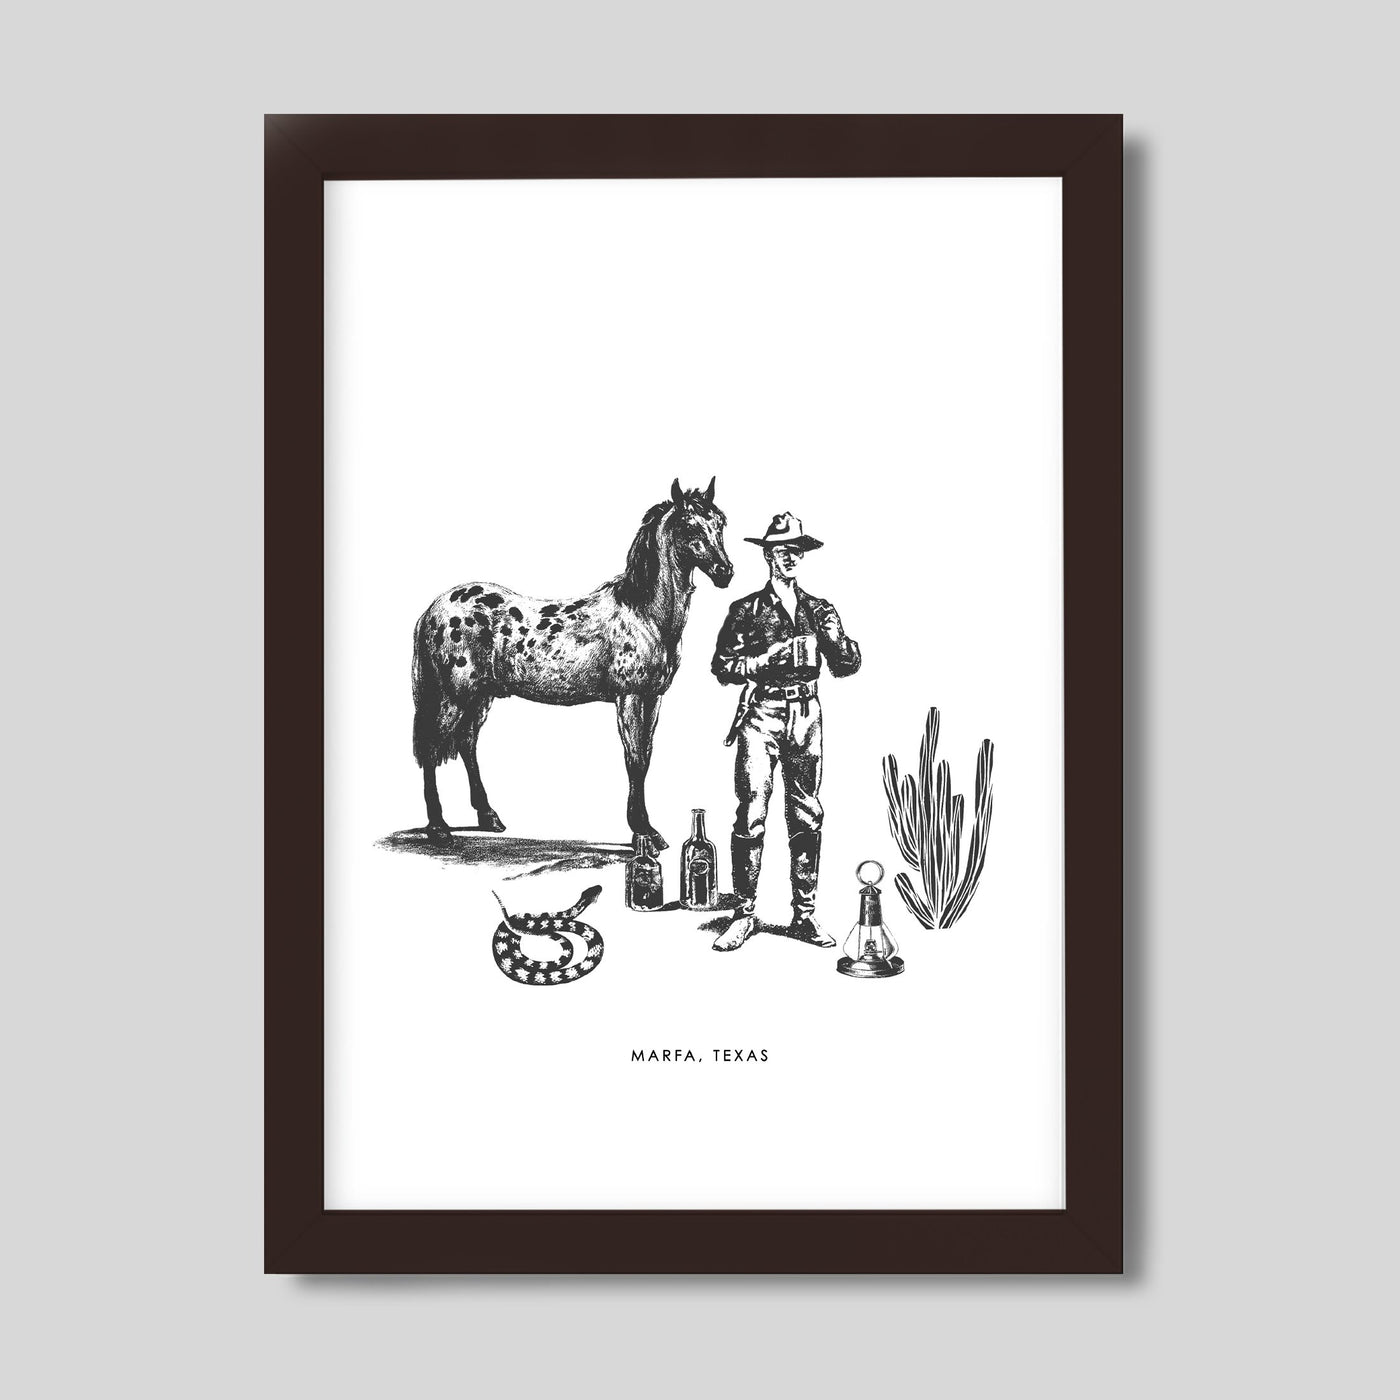 Gallery Prints Black / 8x10 / Walnut Frame Marfa Cowboy Print dombezalergii